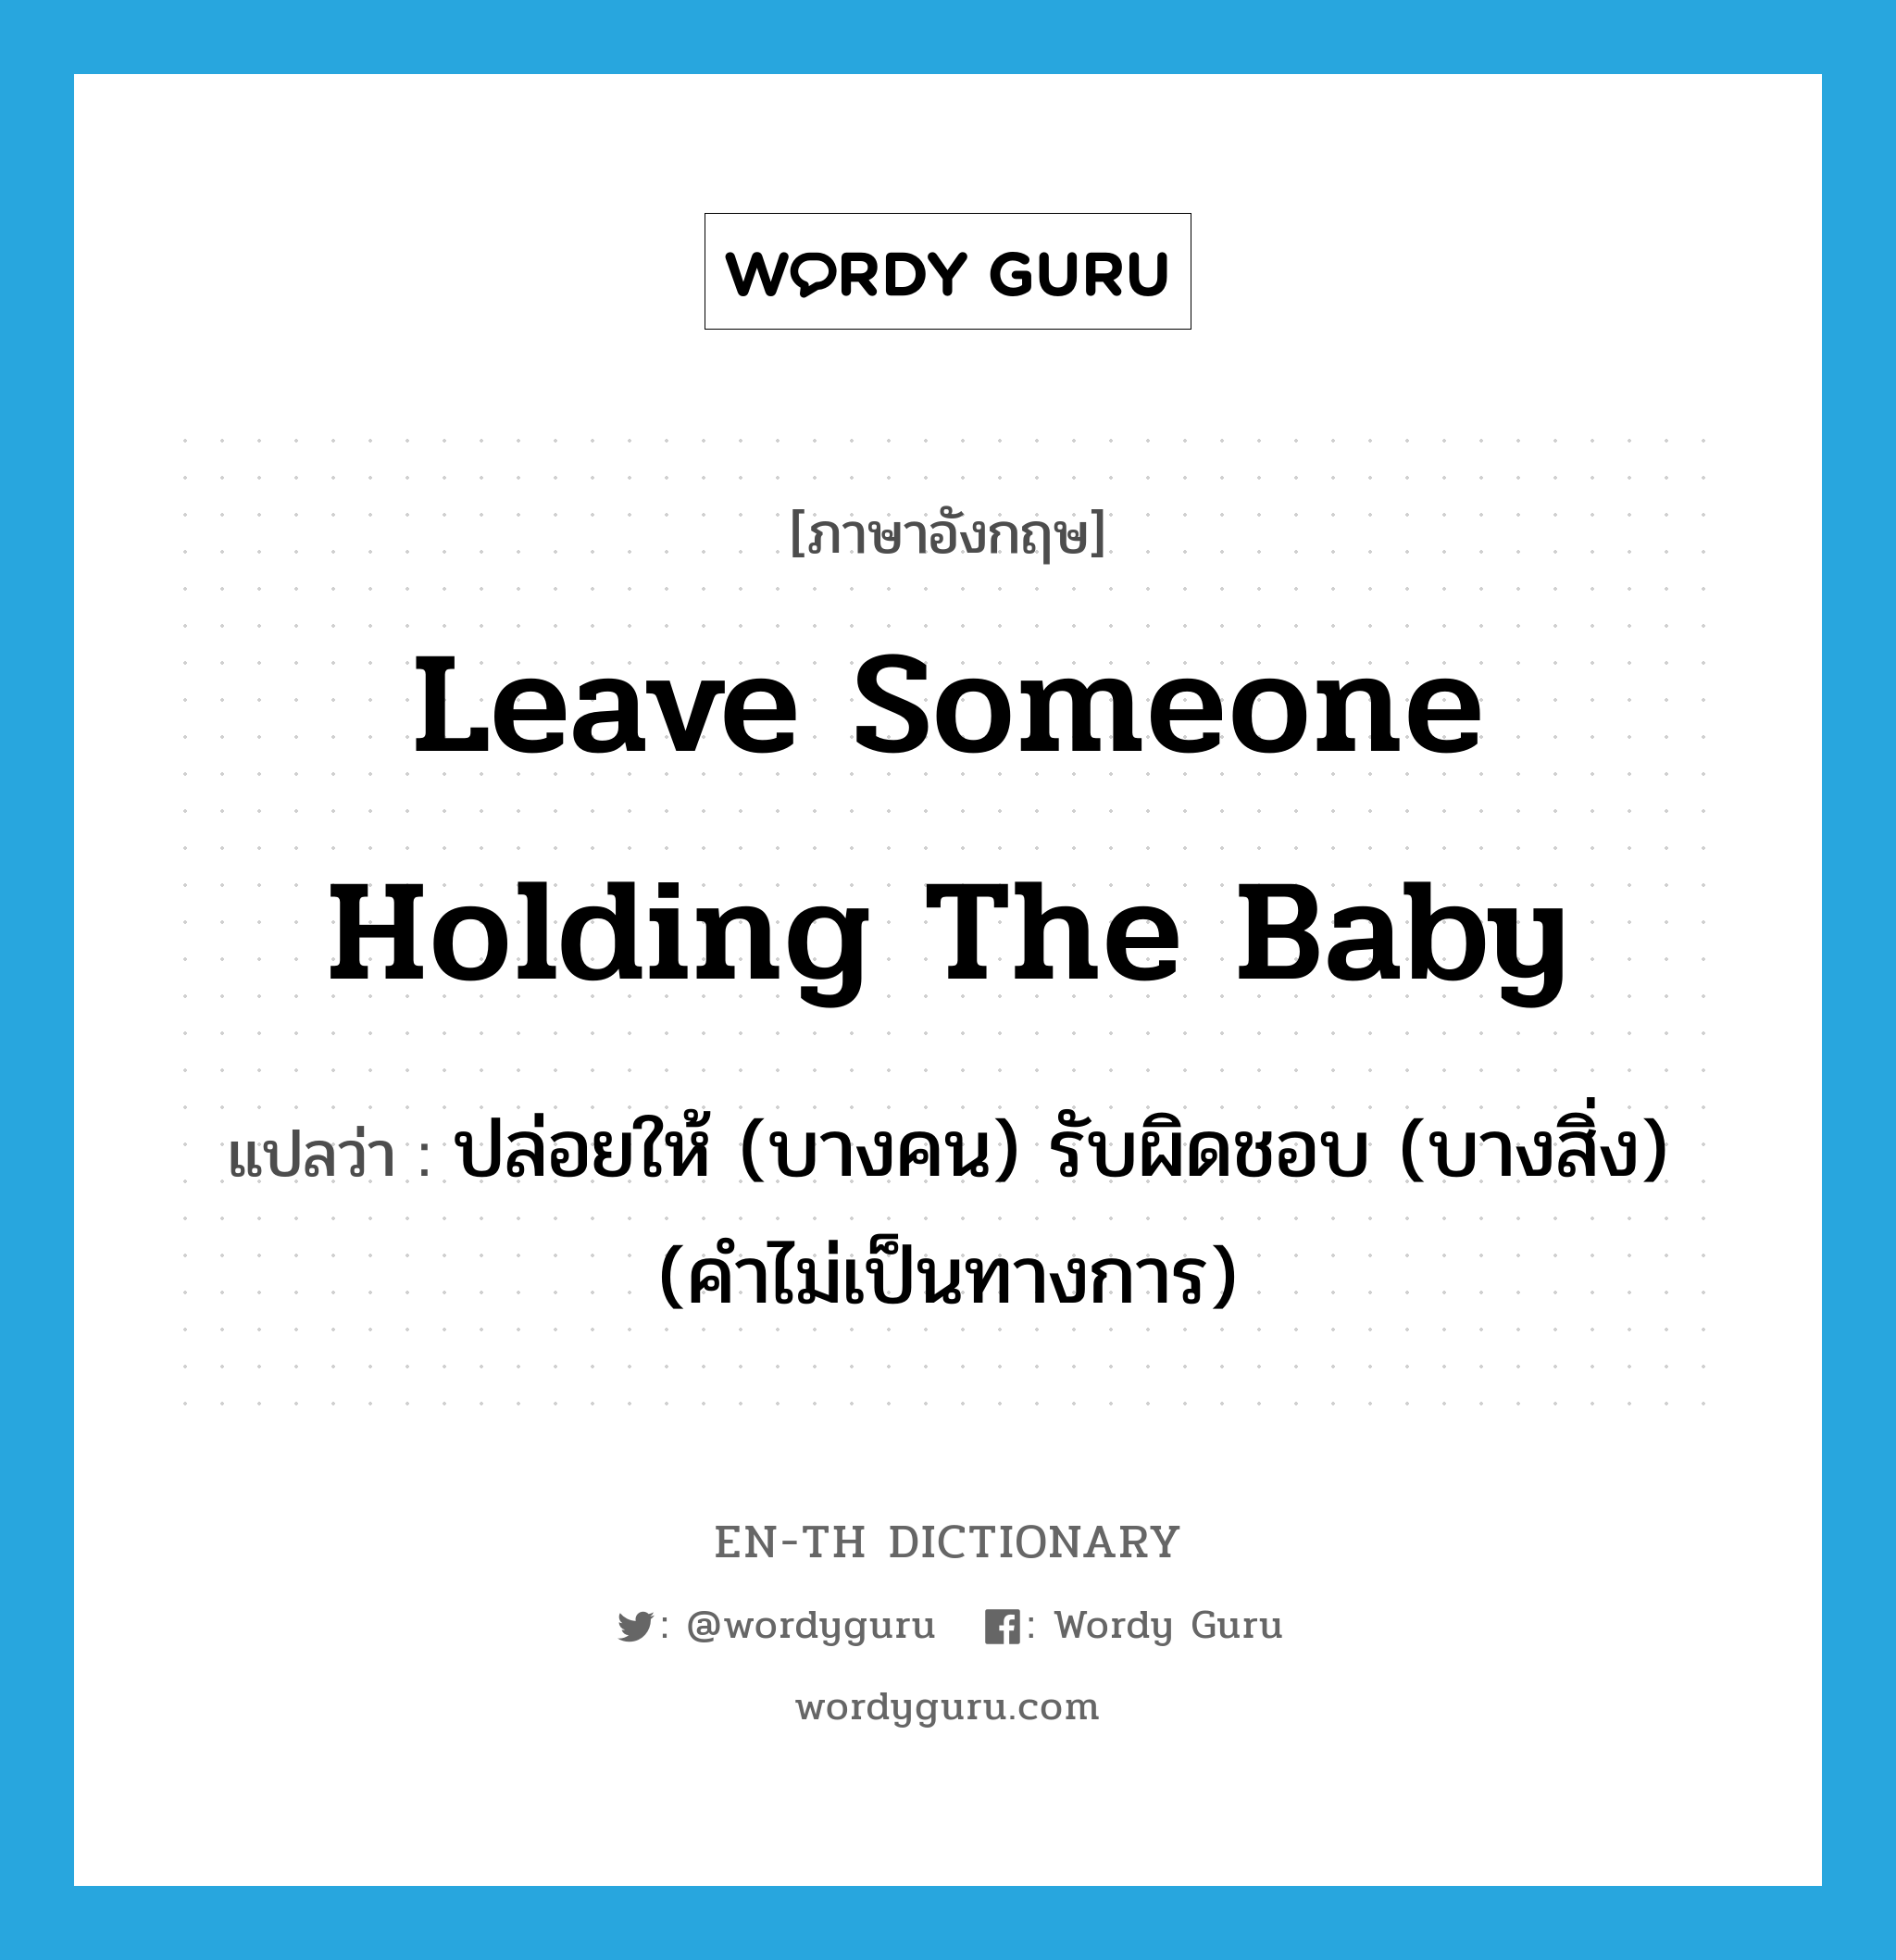 ปล่อยให้ (บางคน) รับผิดชอบ (บางสิ่ง) (คำไม่เป็นทางการ) ภาษาอังกฤษ?, คำศัพท์ภาษาอังกฤษ ปล่อยให้ (บางคน) รับผิดชอบ (บางสิ่ง) (คำไม่เป็นทางการ) แปลว่า leave someone holding the baby ประเภท IDM หมวด IDM